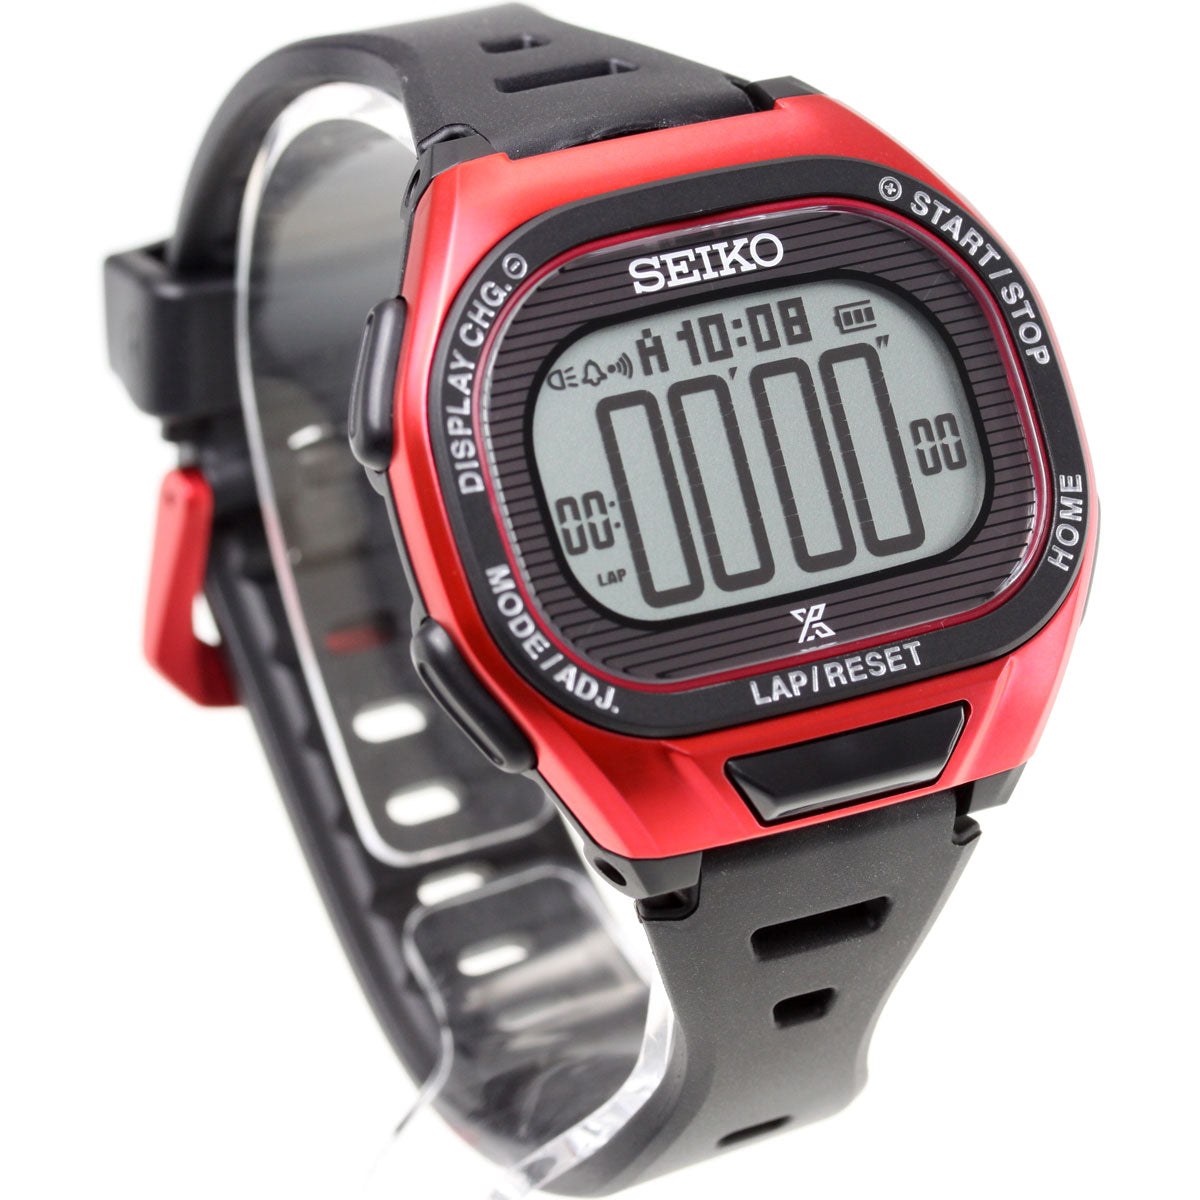 セイコー プロスペックス スーパーランナーズ SEIKO PROSPEX SUPER RUNNERS ソーラー 腕時計 メンズ レディース SBEF047